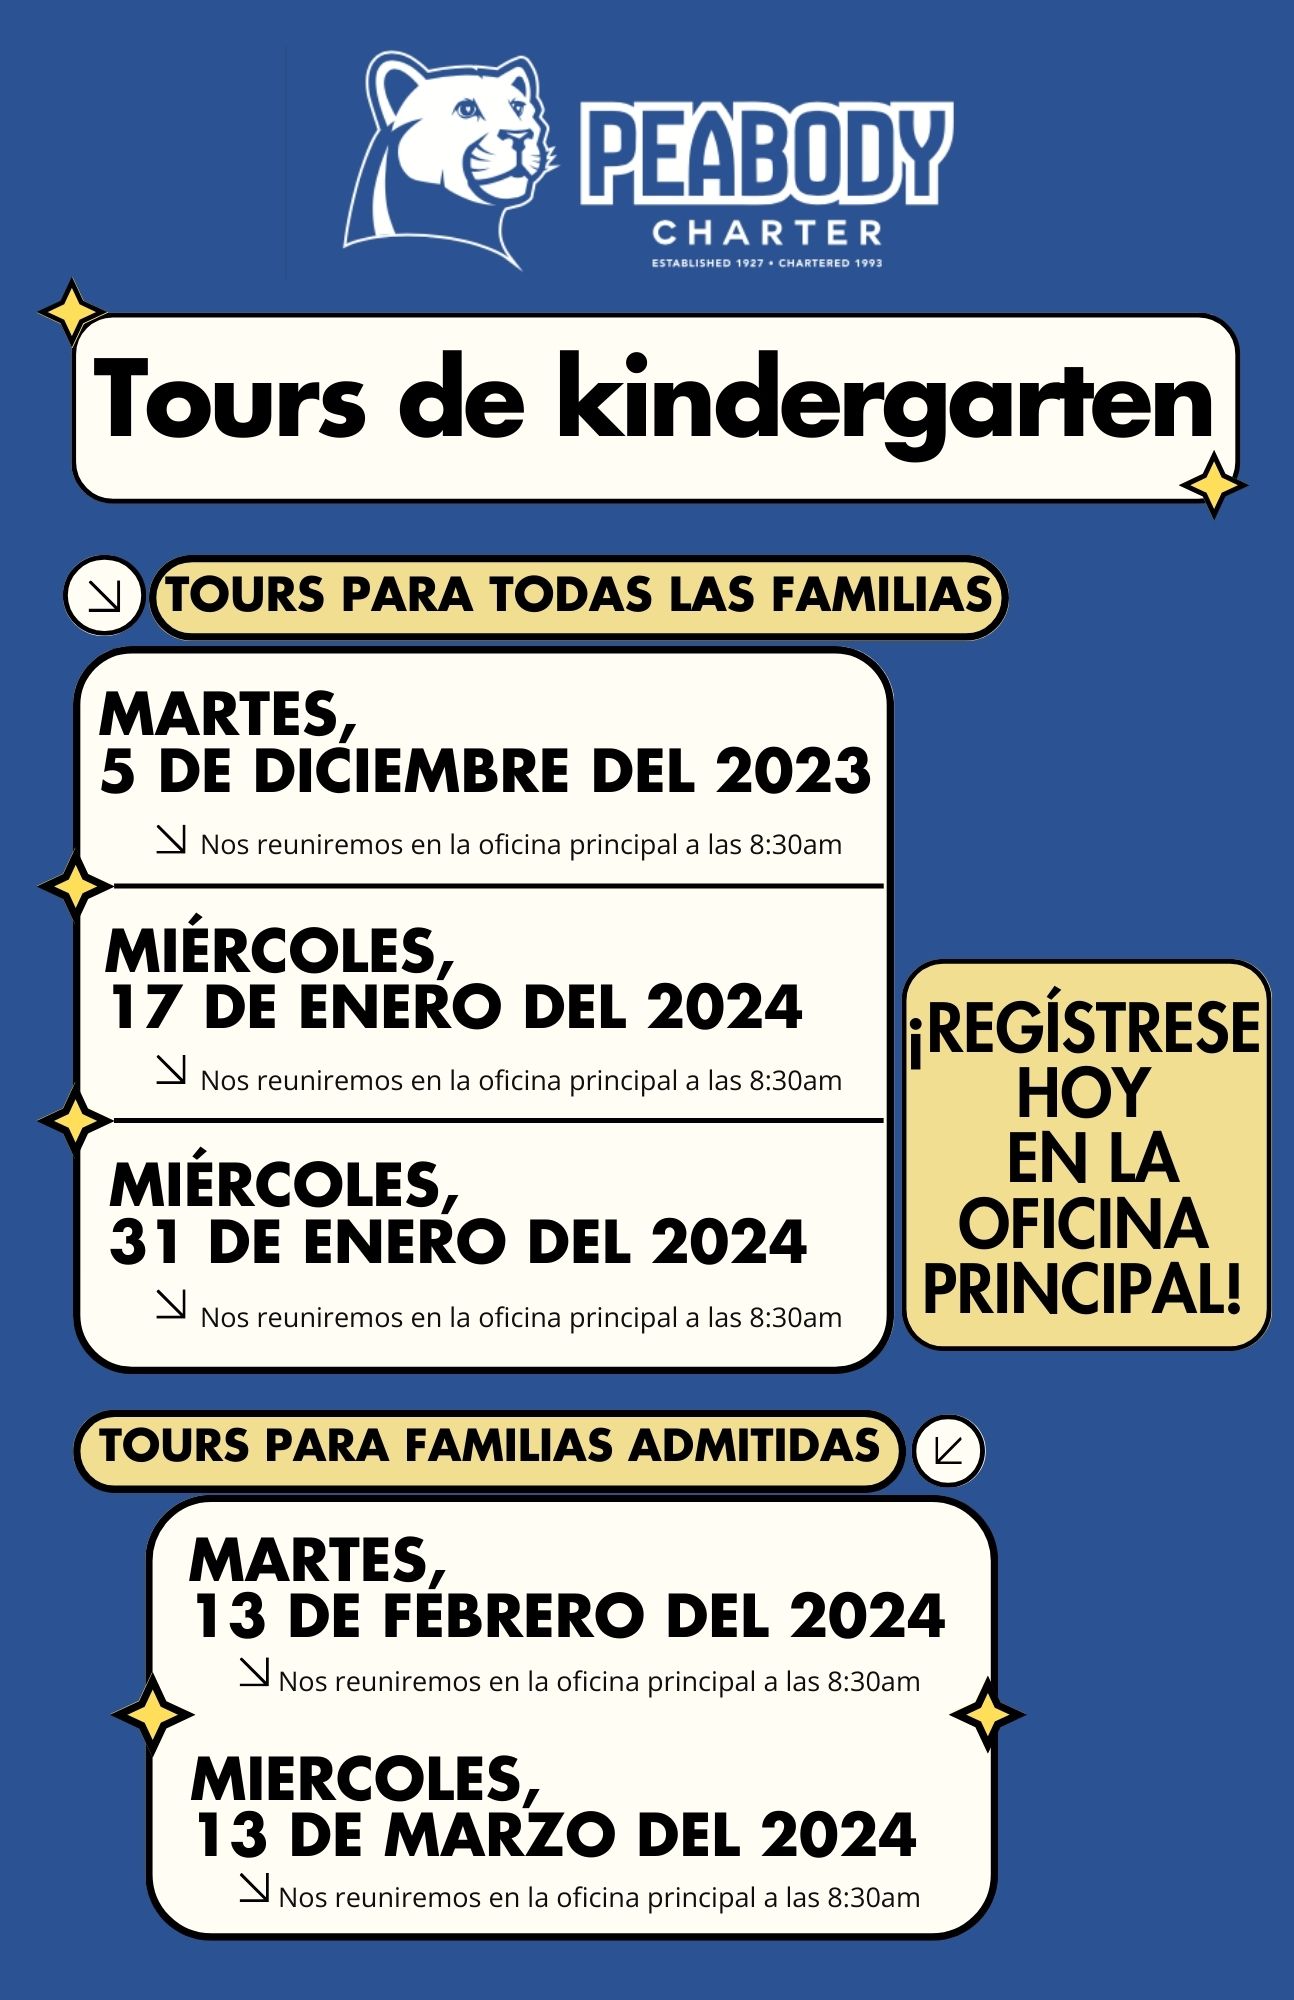 Kindergarten - Tours Para todas las familias, regístrese hoy en la oficina principal